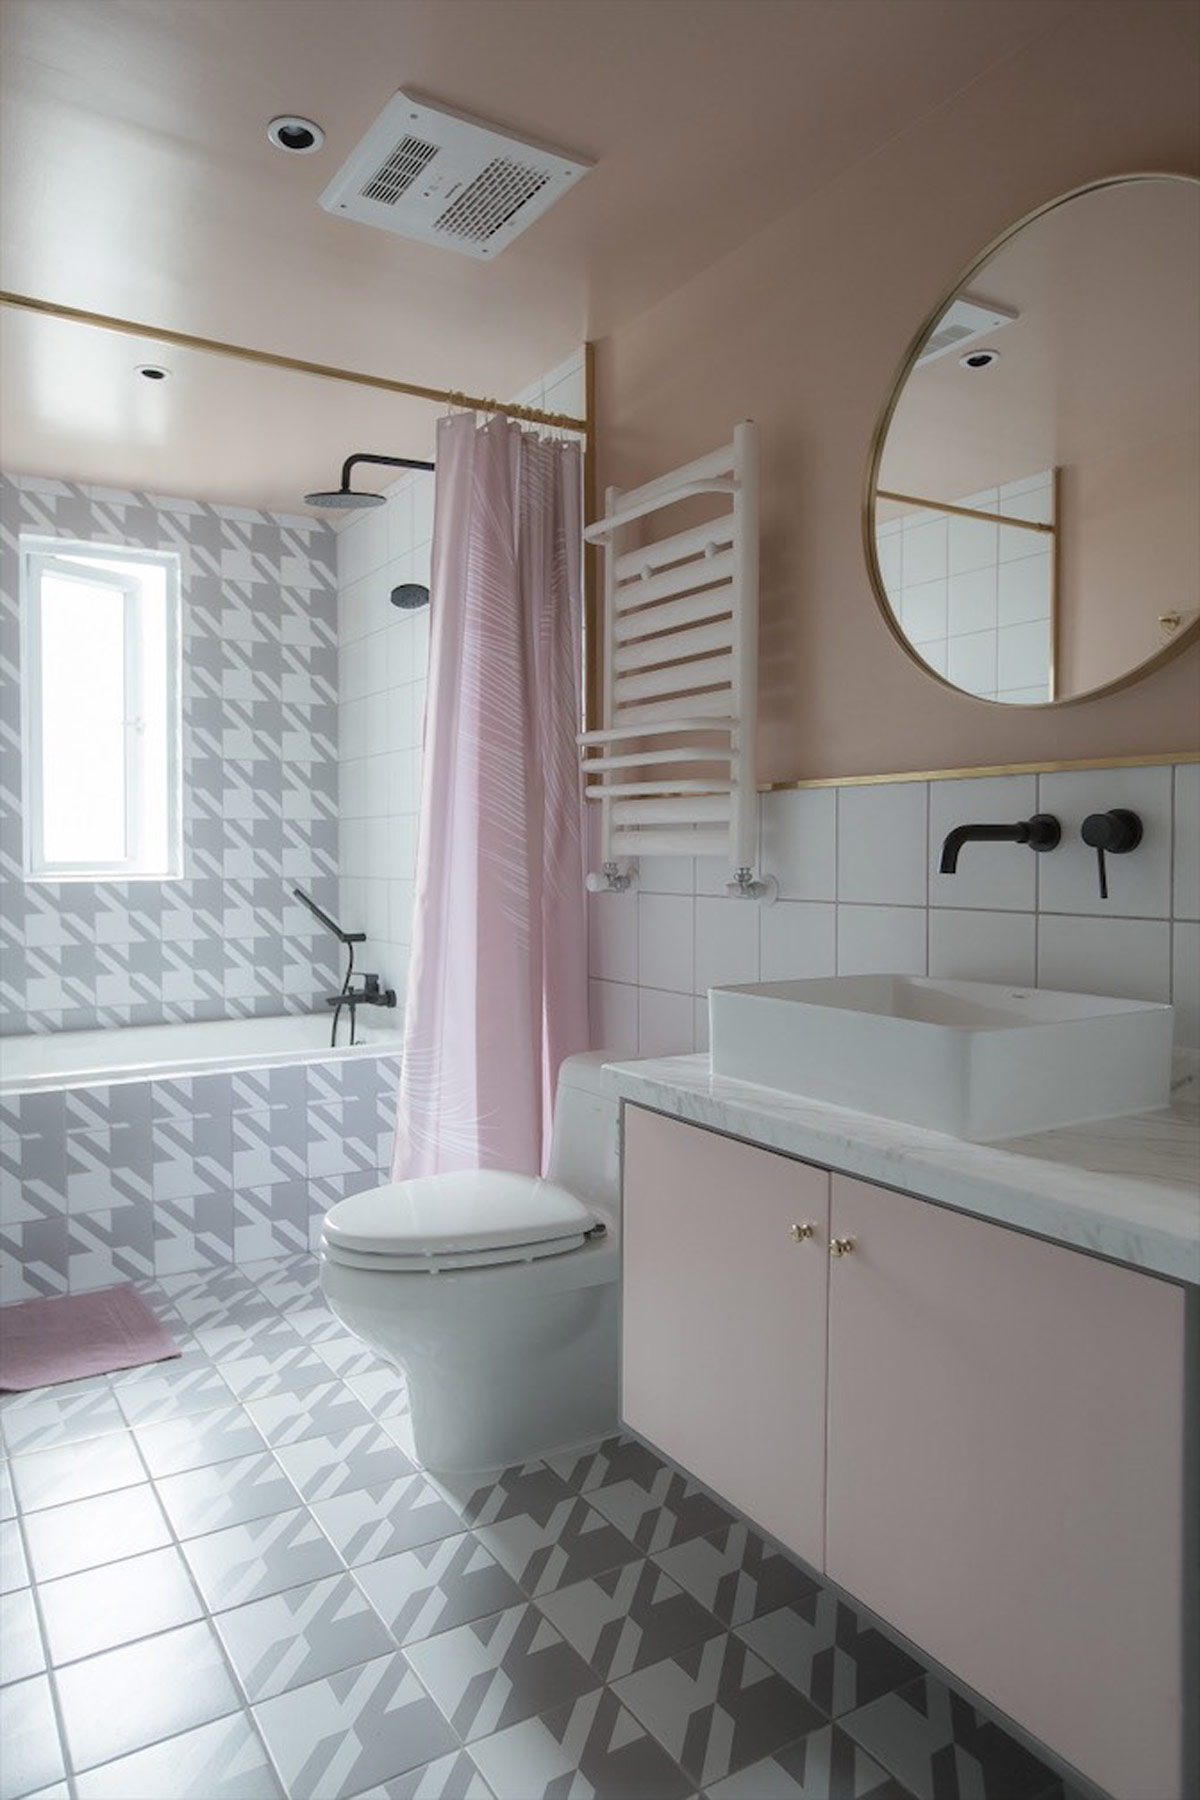 Phòng tắm là sự tổng hợp quyến rũ của gạch houndstooth tuyệt đẹp và các yếu tố trang trí màu hồng nhẹ nhàng.